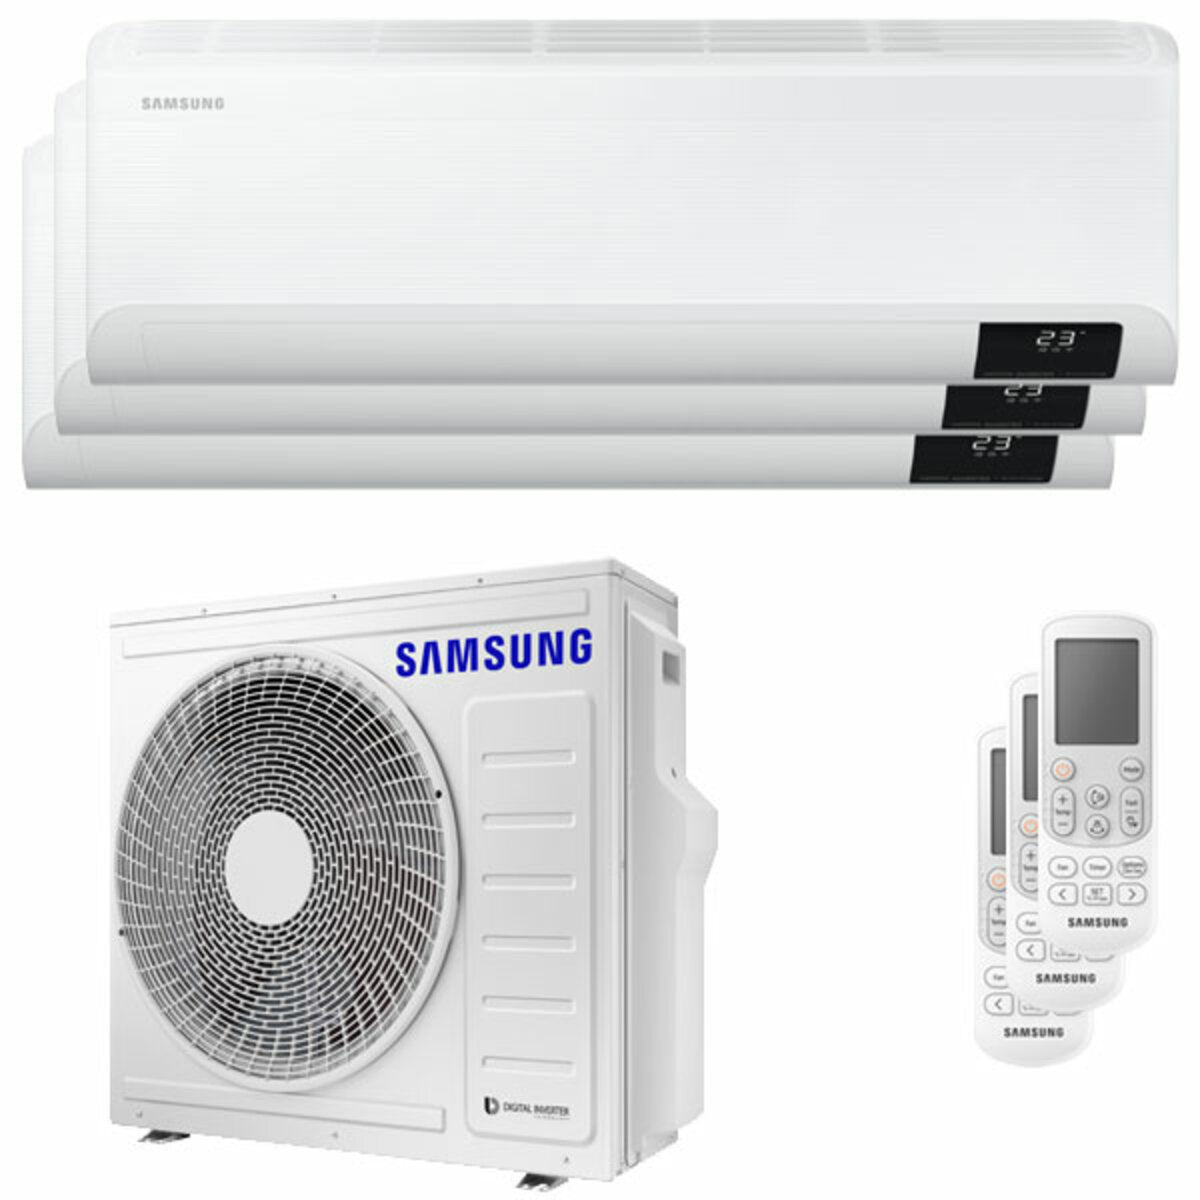 Samsung Cebu Wi-Fi Trial Split Klimaanlage 7000 + 7000 + 18000 BTU Wechselrichter A++ WLAN Außengerät 8,0 kW